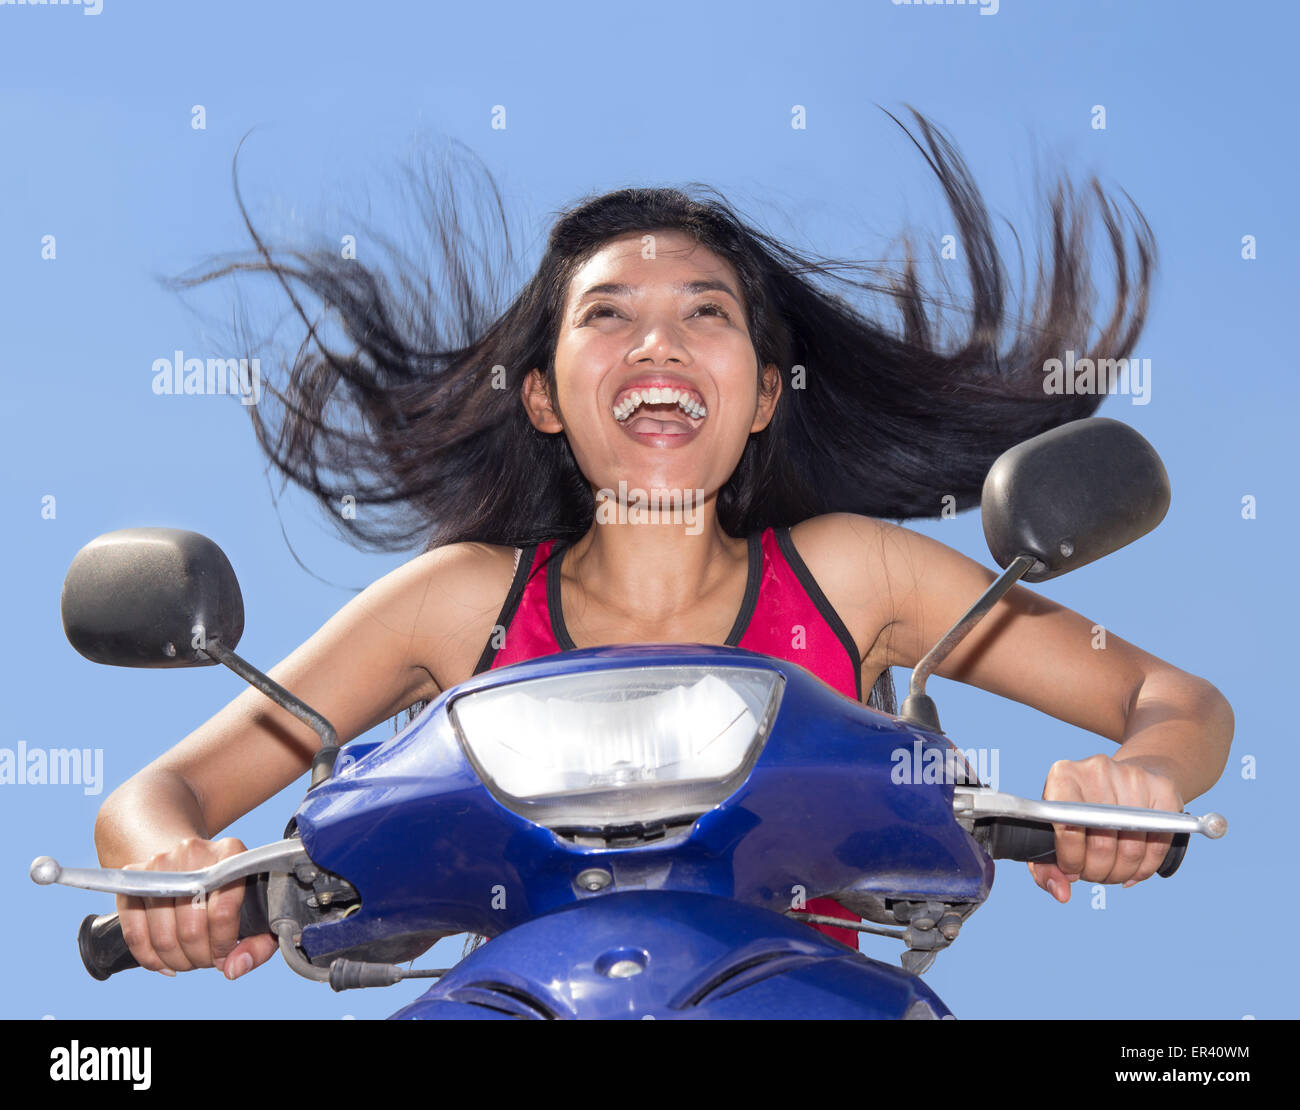 Frau mit fliegenden Haare auf einem Motorrad auf einem blauen Hintergrund Stockfoto